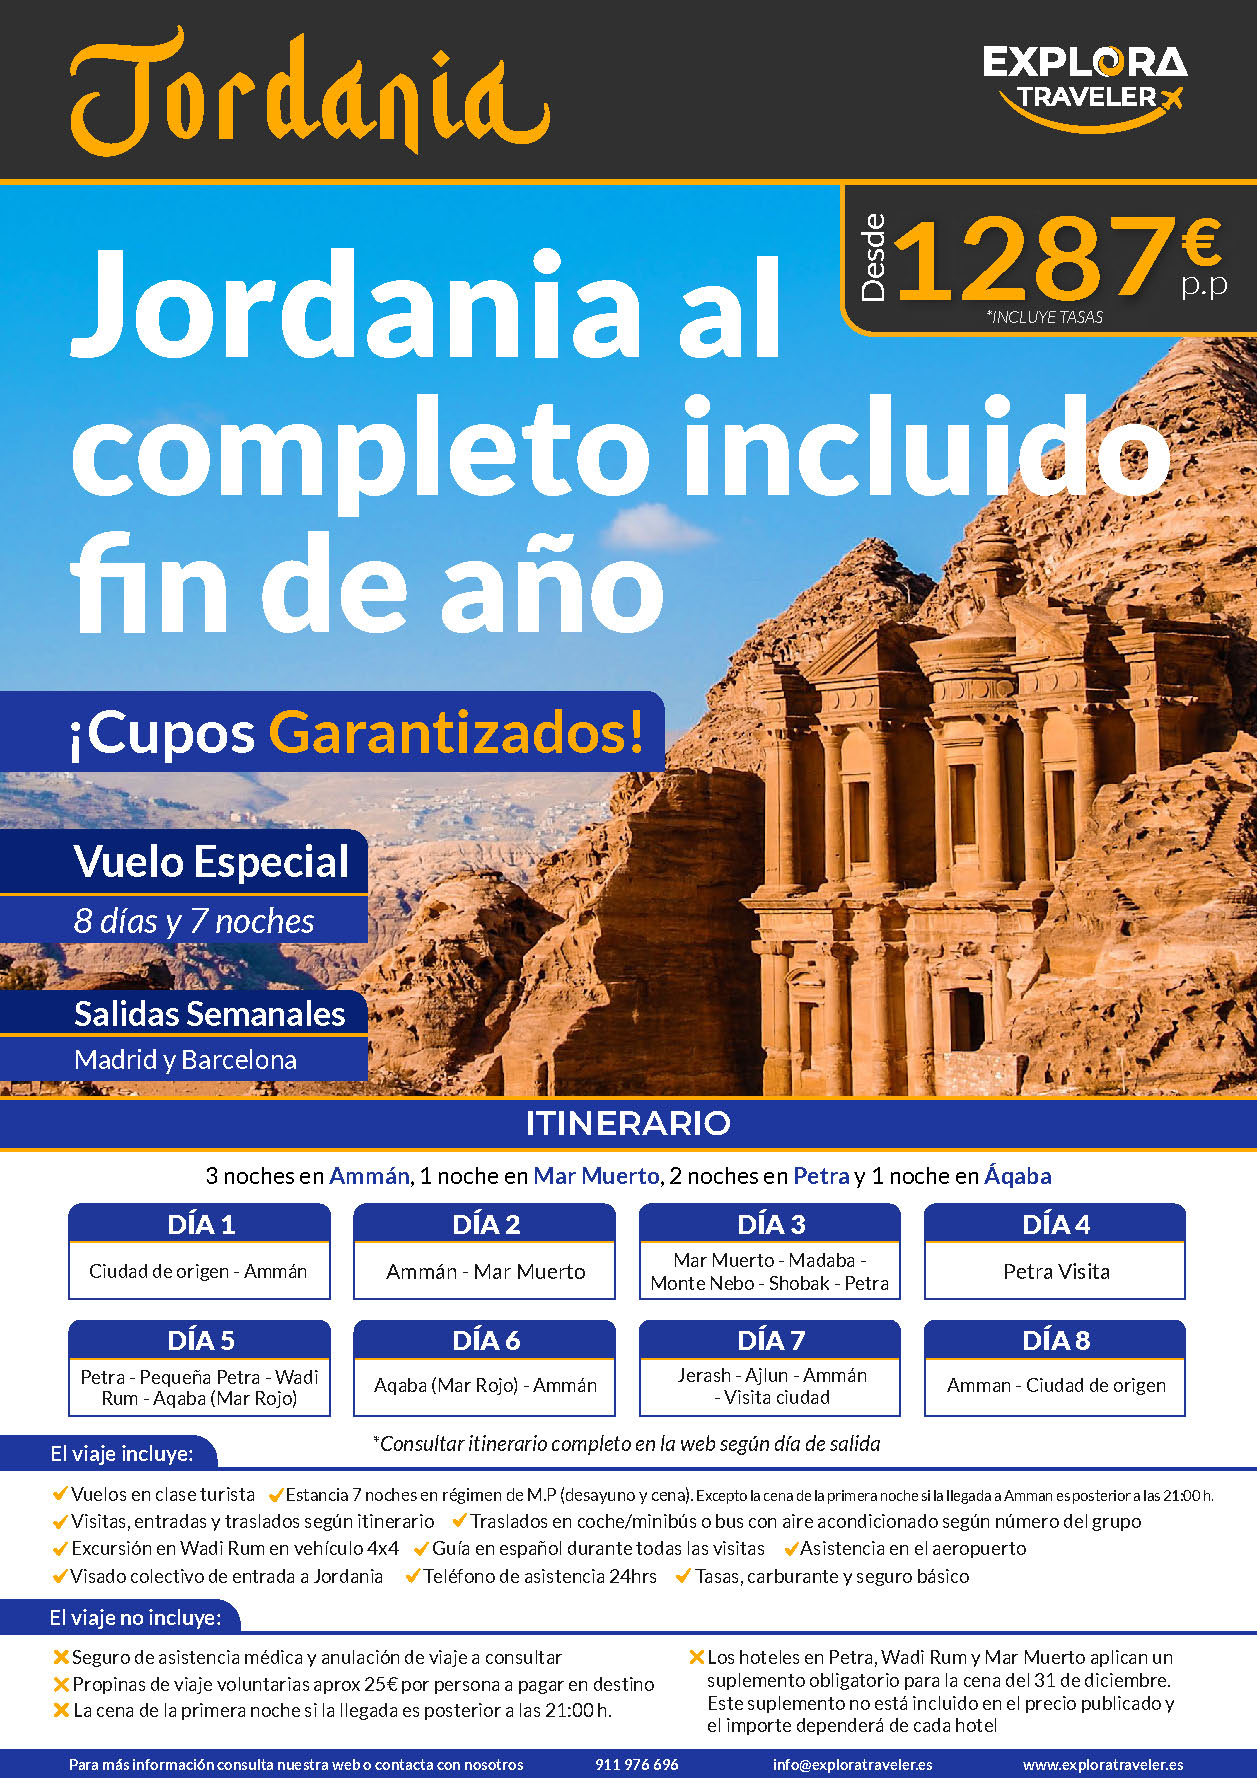 Oferta Explora Traveler Jordania al Completo Septiembre a Diciembre 2023 cupos 8 dias Media Pension salidas vuelo directo desde Madrid y Barcelona